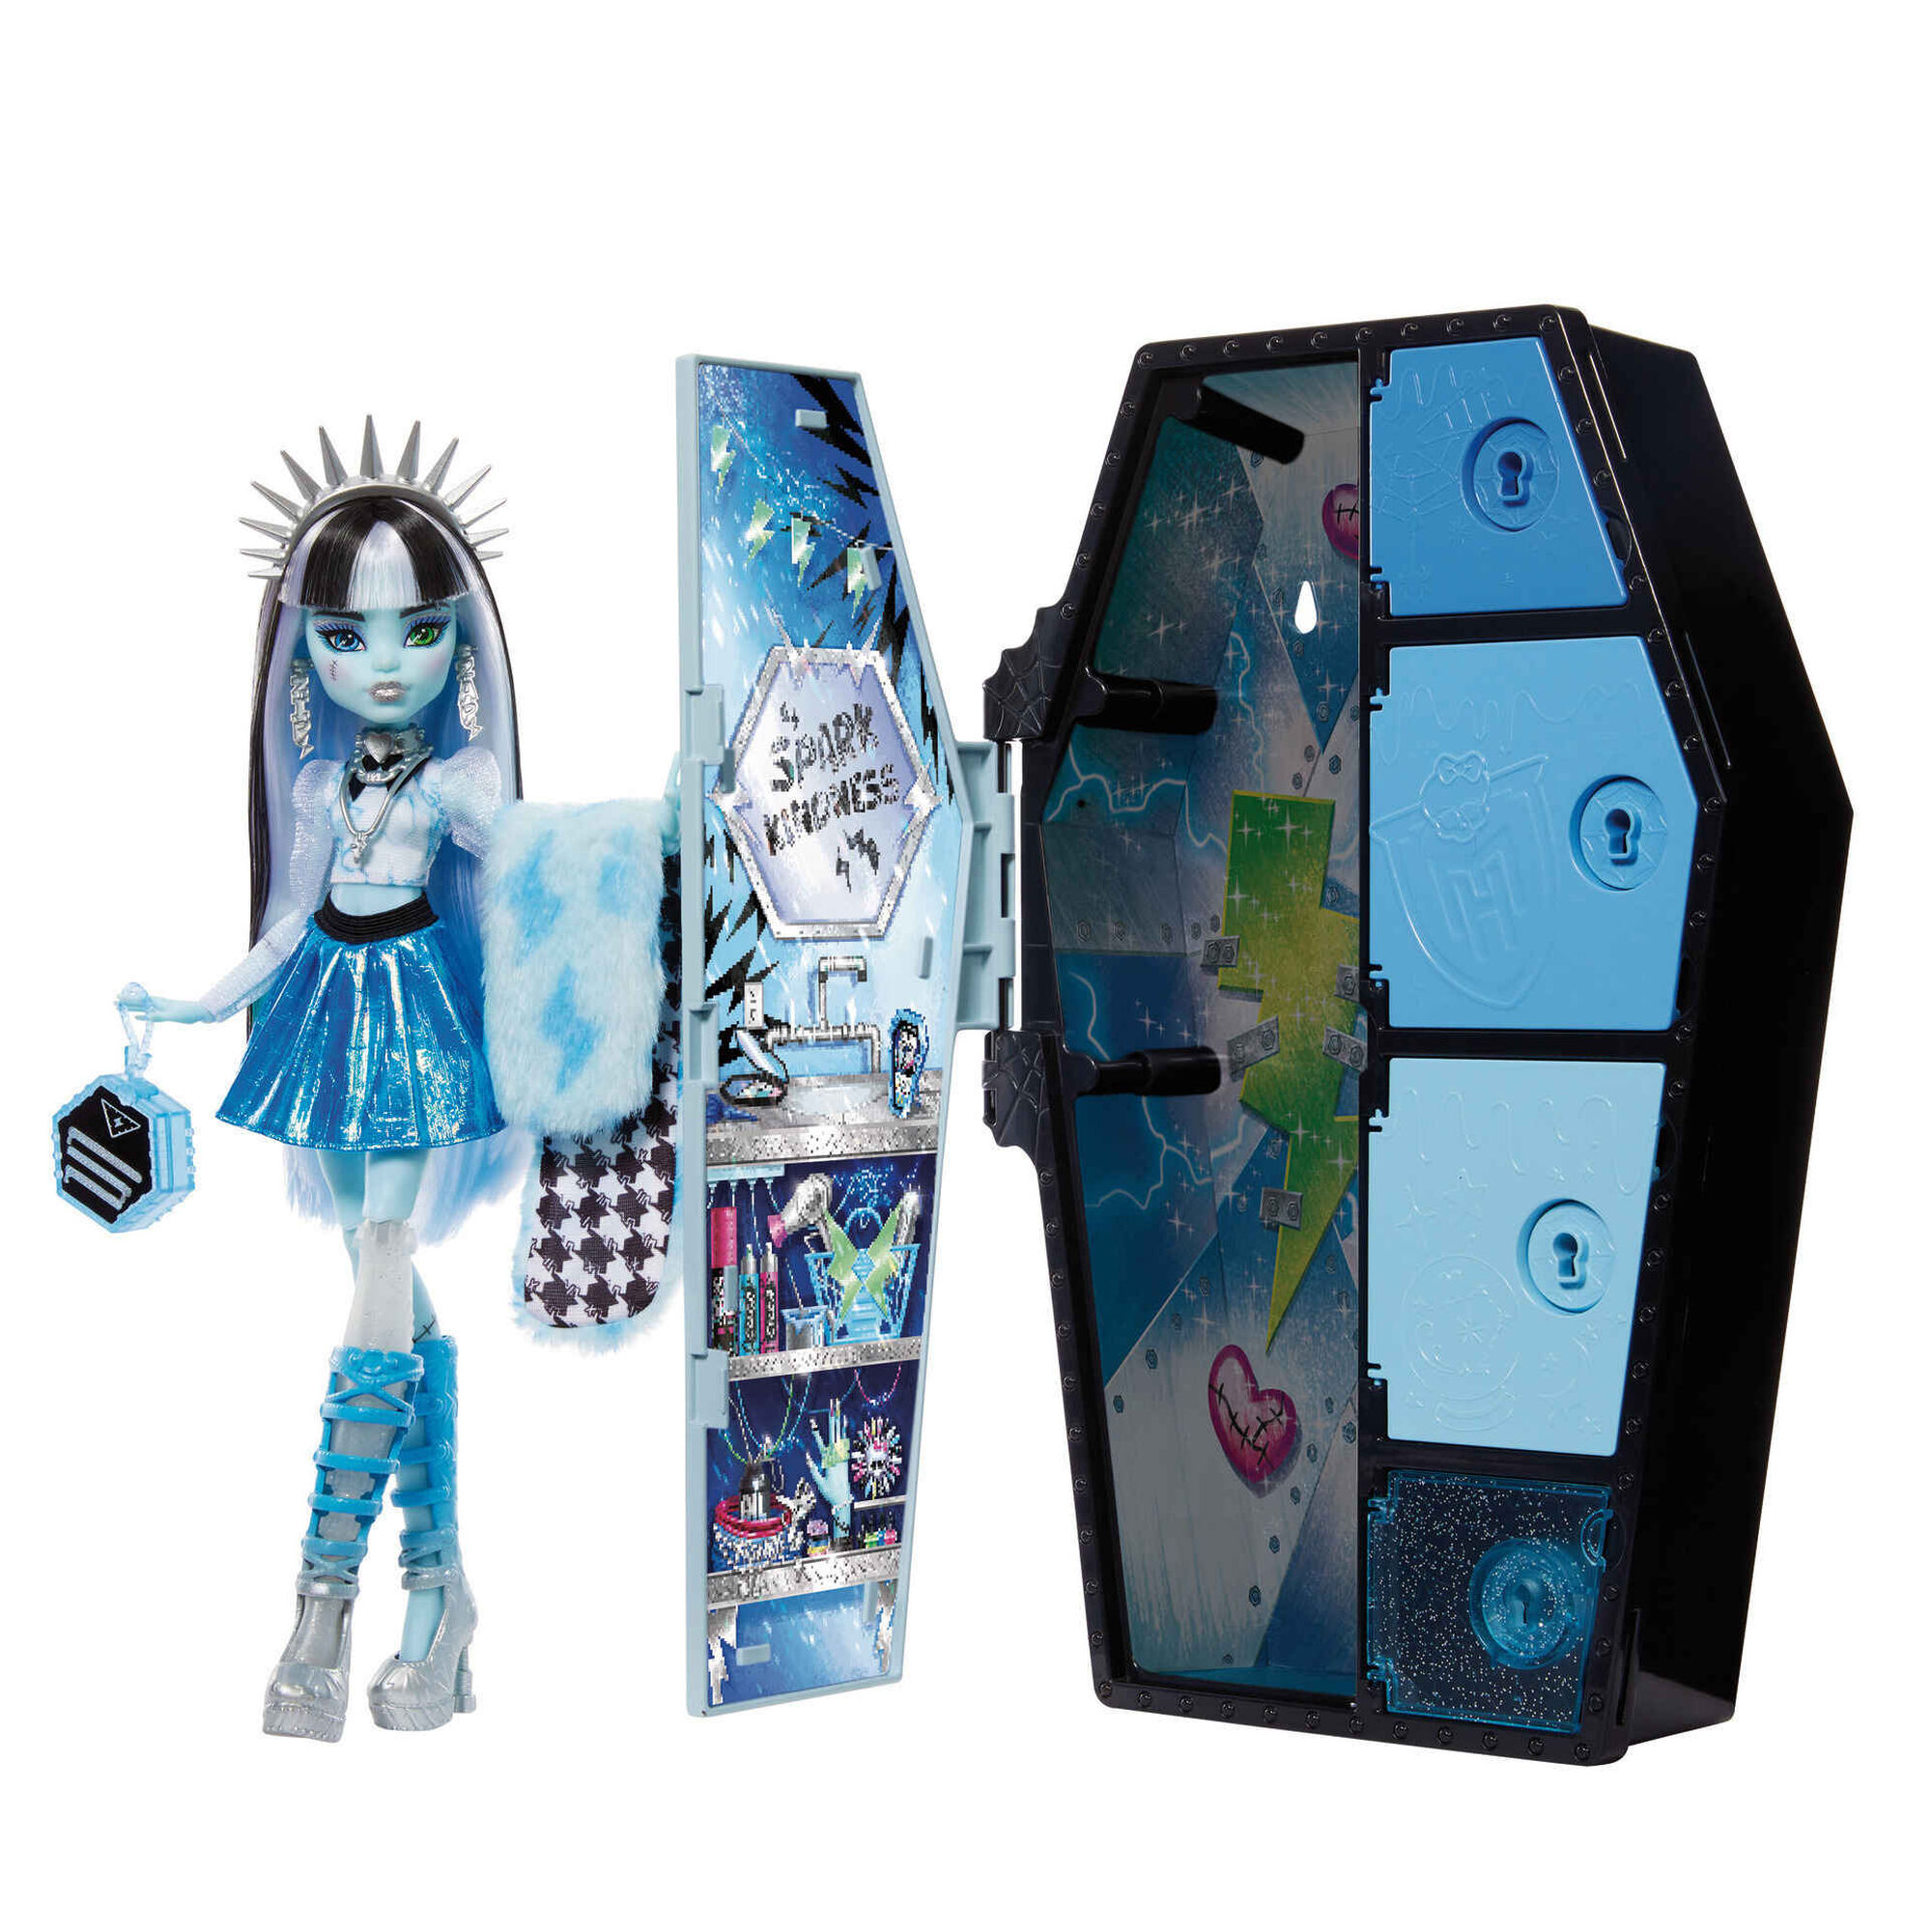 Boneca Monster High Frankie Stein, Coleção Passeio Shopping